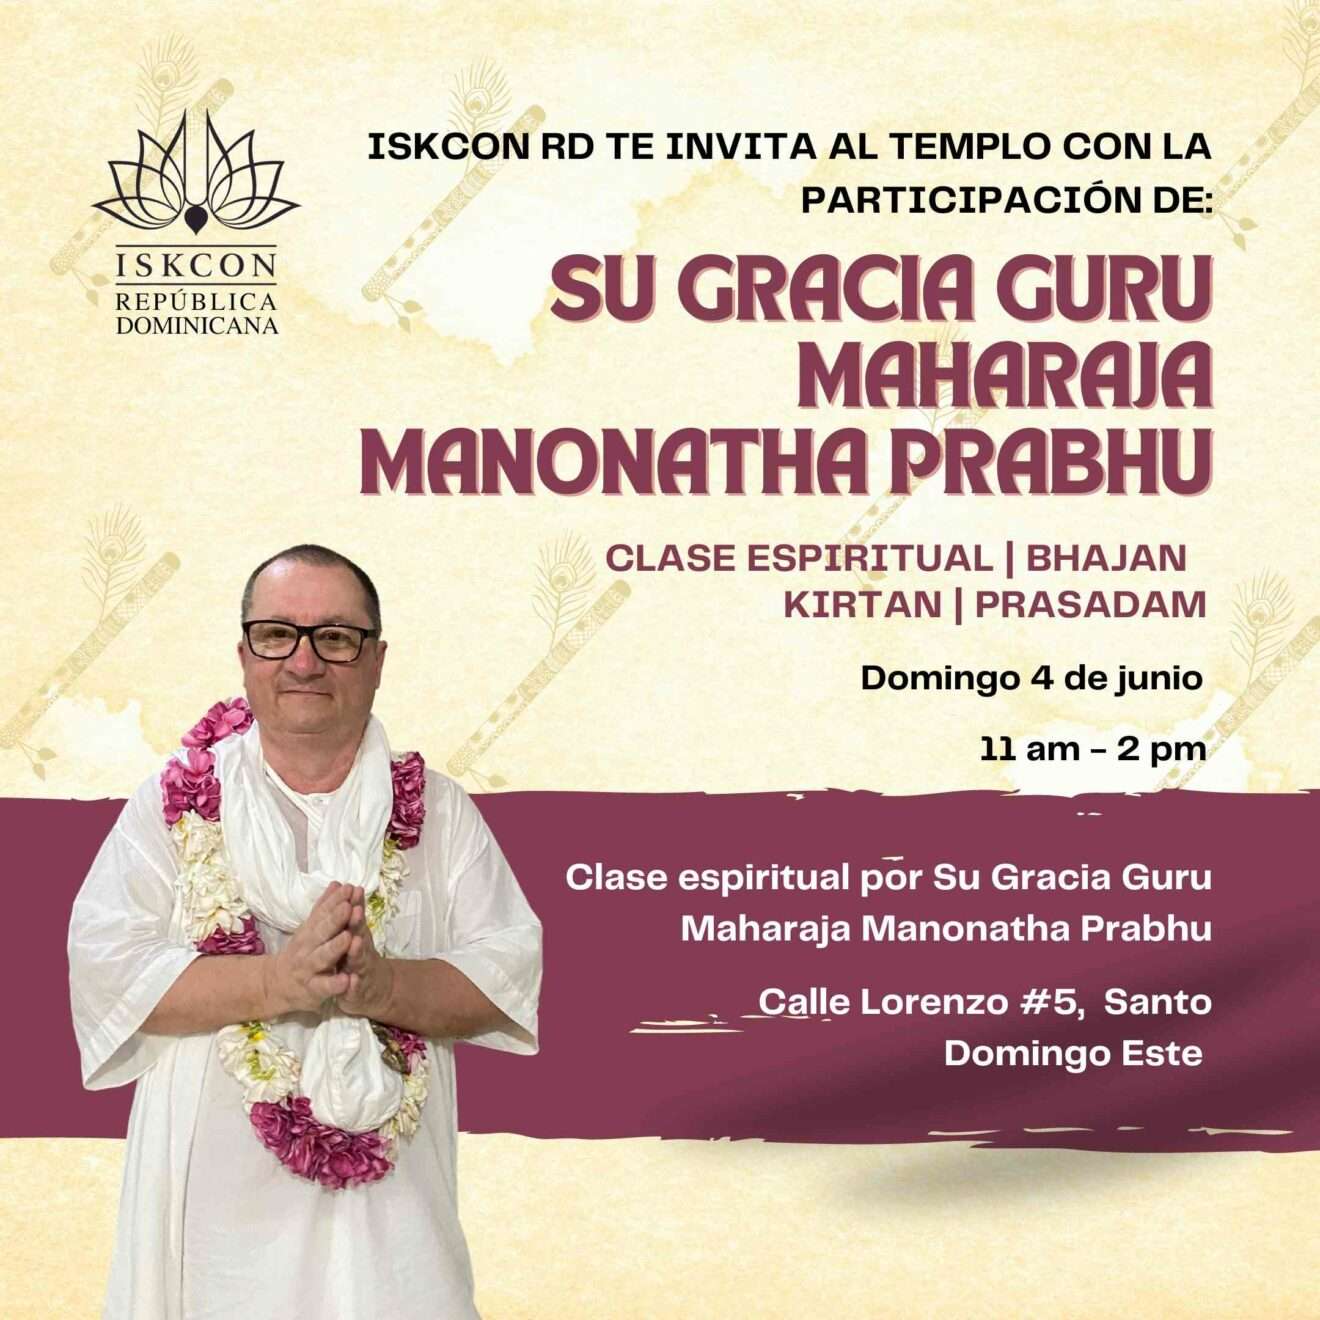 Guru Maharaja asistirá al templo el domingo 4 de junio